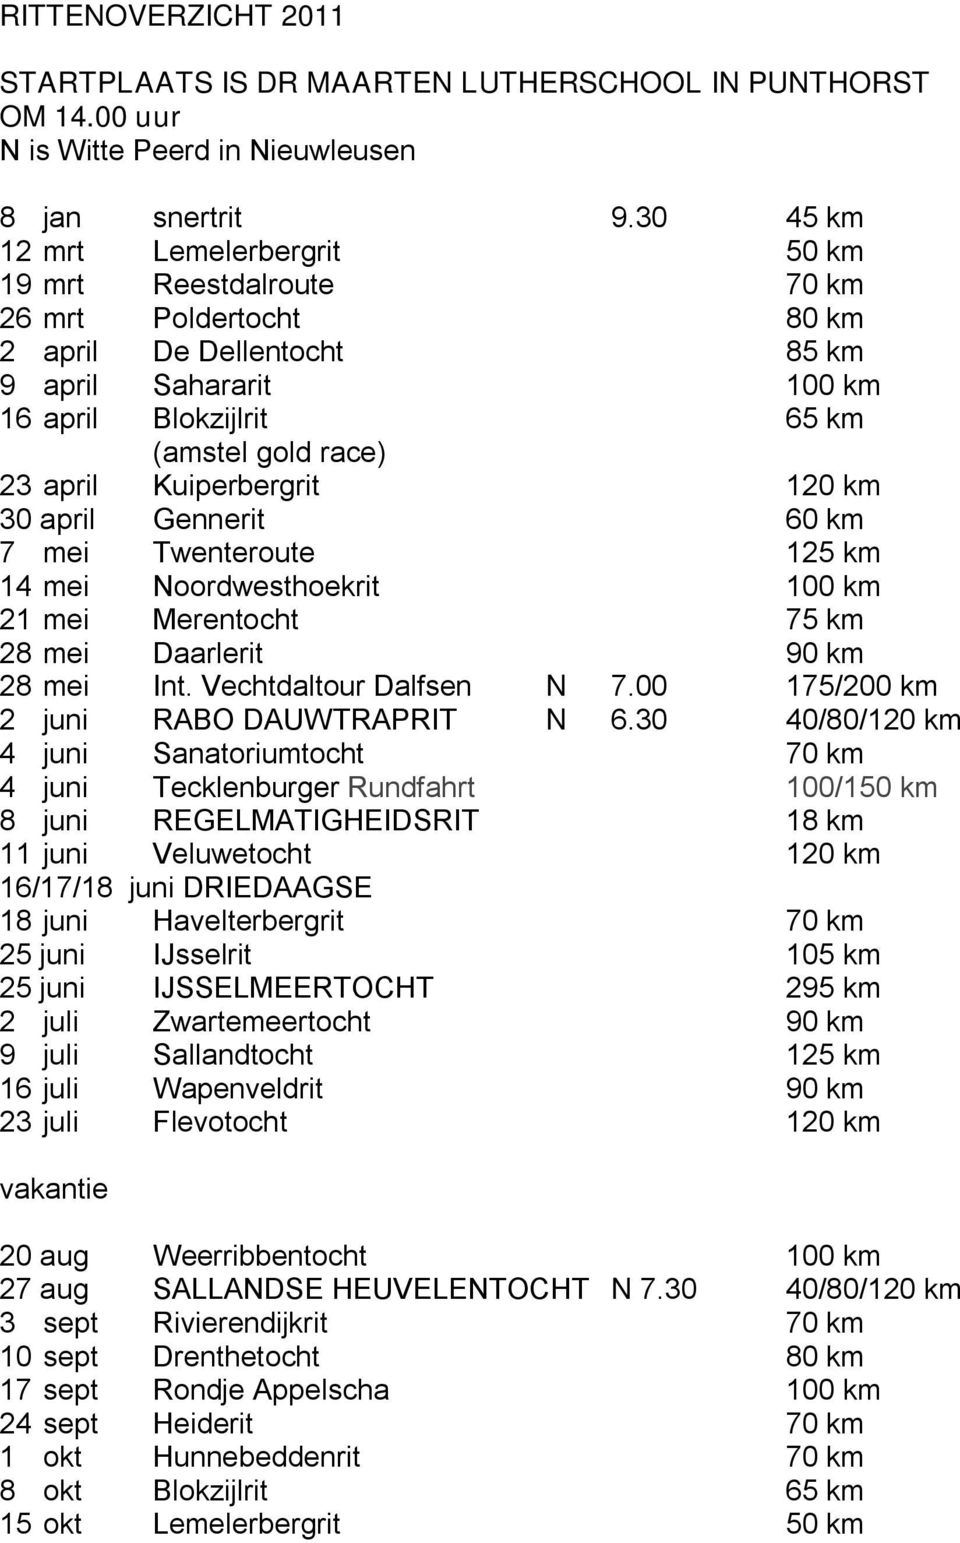 Kuiperbergrit 120 km 30 april Gennerit 60 km 7 mei Twenteroute 125 km 14 mei Noordwesthoekrit 100 km 21 mei Merentocht 75 km 28 mei Daarlerit 90 km 28 mei Int. Vechtdaltour Dalfsen N 7.